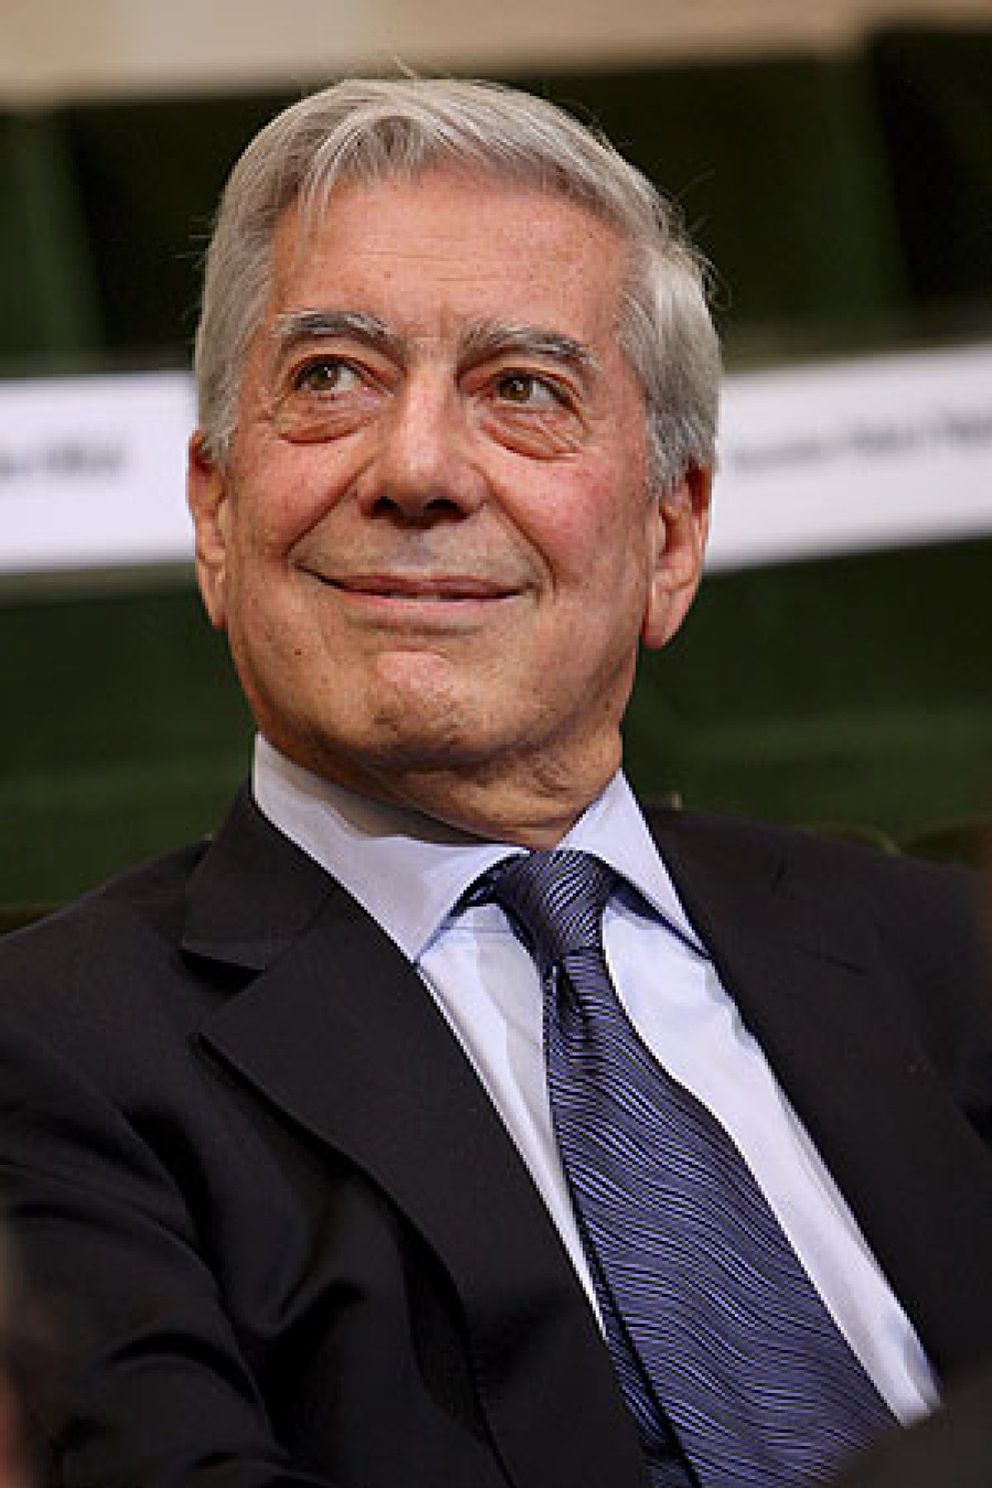 Premios Nobel Mario Vargas Llosa da la campanada y gana el Nobel de Literatura